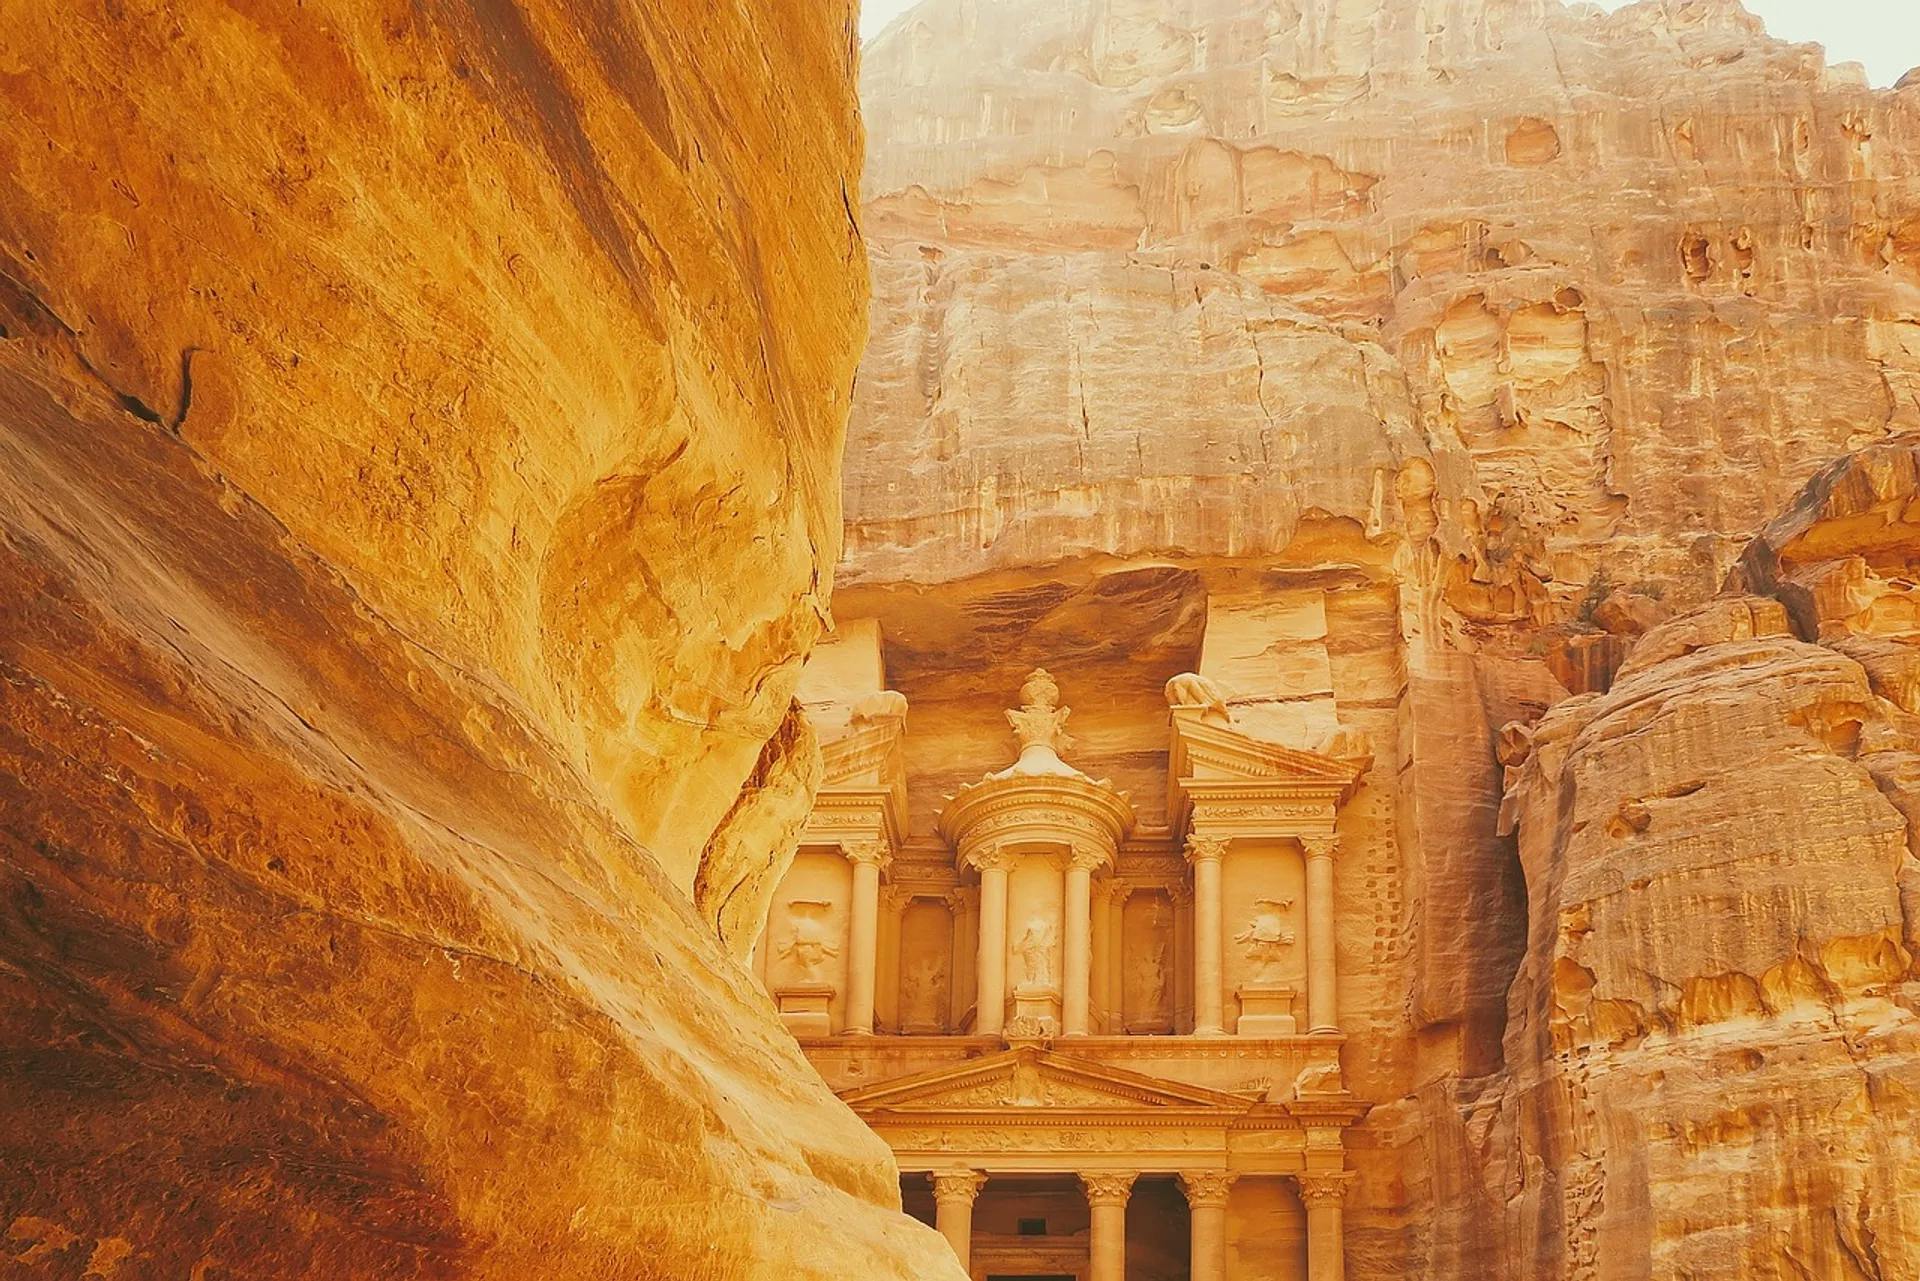 Visit the Rock City of Petra in Jordan